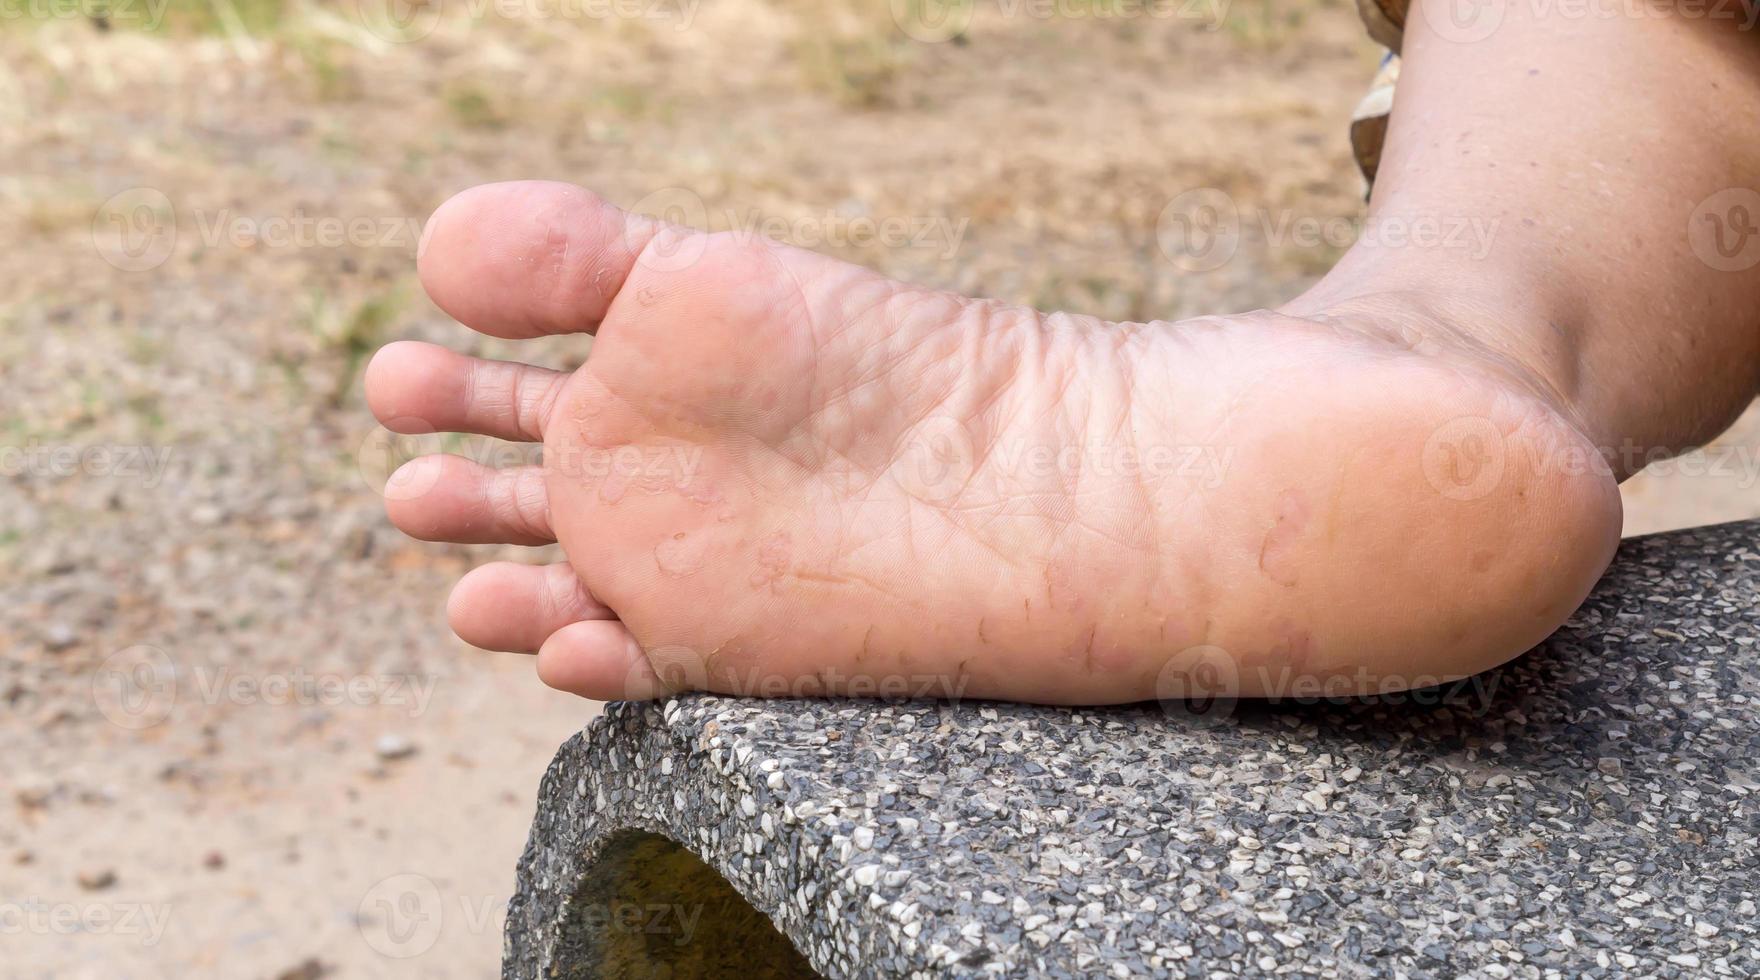 kvinna lidande från fot öm orsakade förbi idrottarens fot, patient lidande från svår fot hud sjukdom, stänga upp Foto av fot sjukdom, begrepp av ohälsosam mänsklig fot